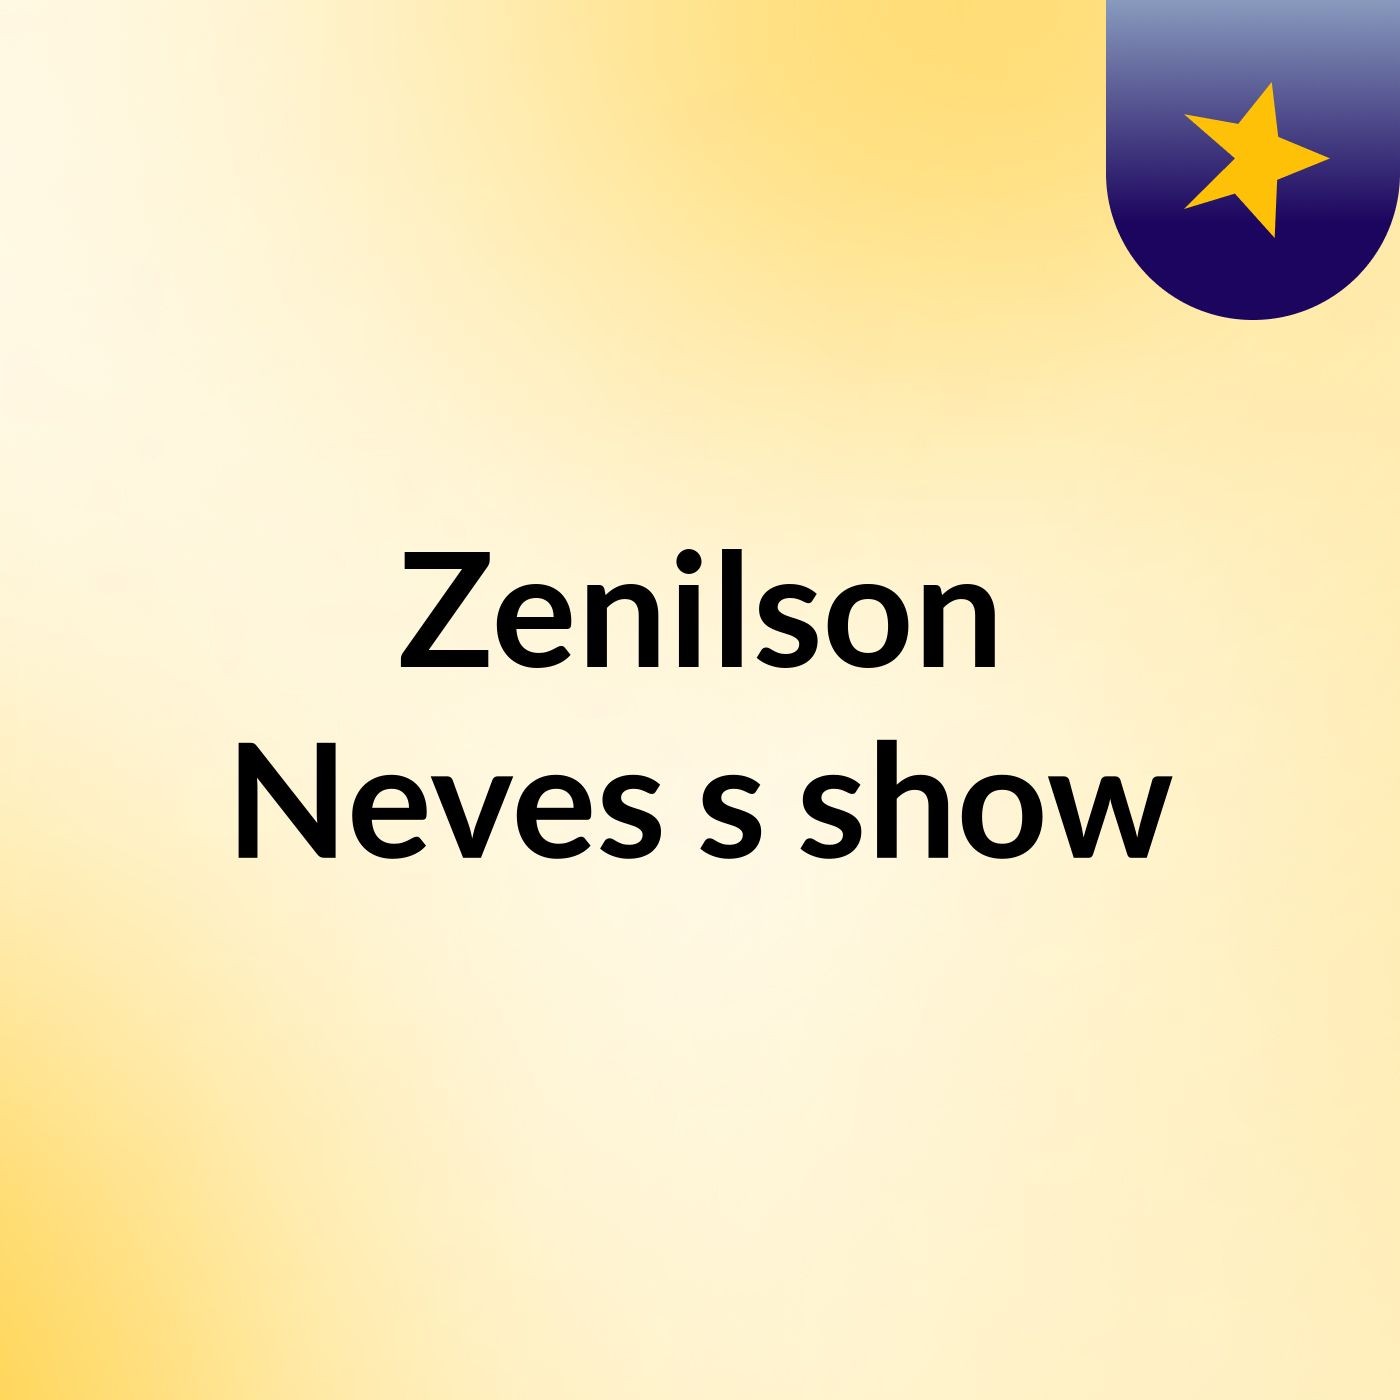 Zenilson Neves's show